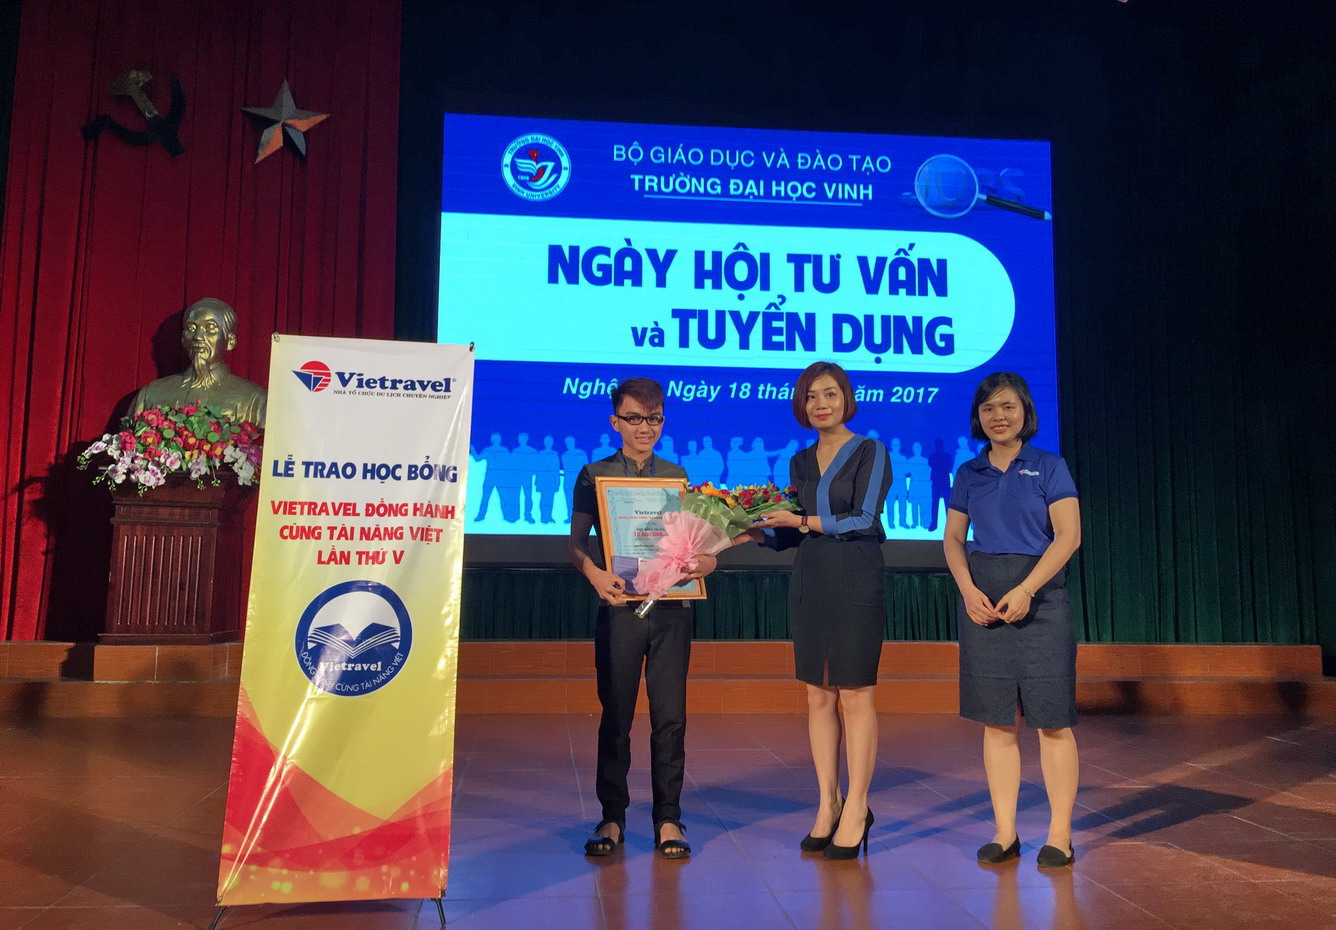 Lễ trao học bổng “Vietravel đồng hành cùng tài năng Việt” lần v - 2017 tại TP. Vinh